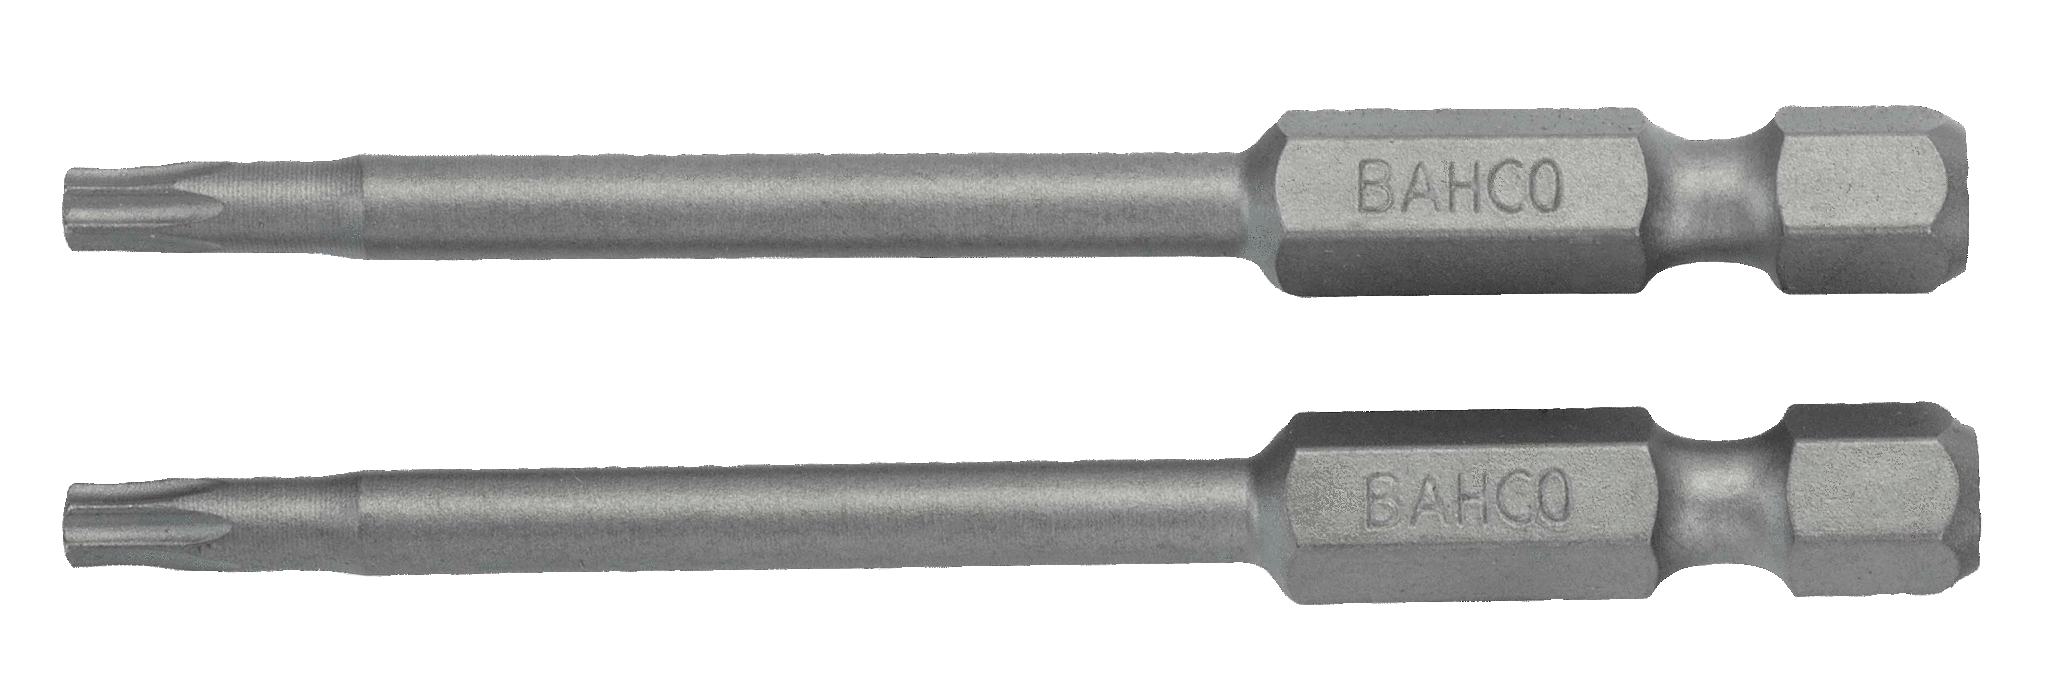 картинка Стандартные биты для отверток Torx® TR, 70 мм BAHCO 59S/70TR30 от магазина "Элит-инструмент"